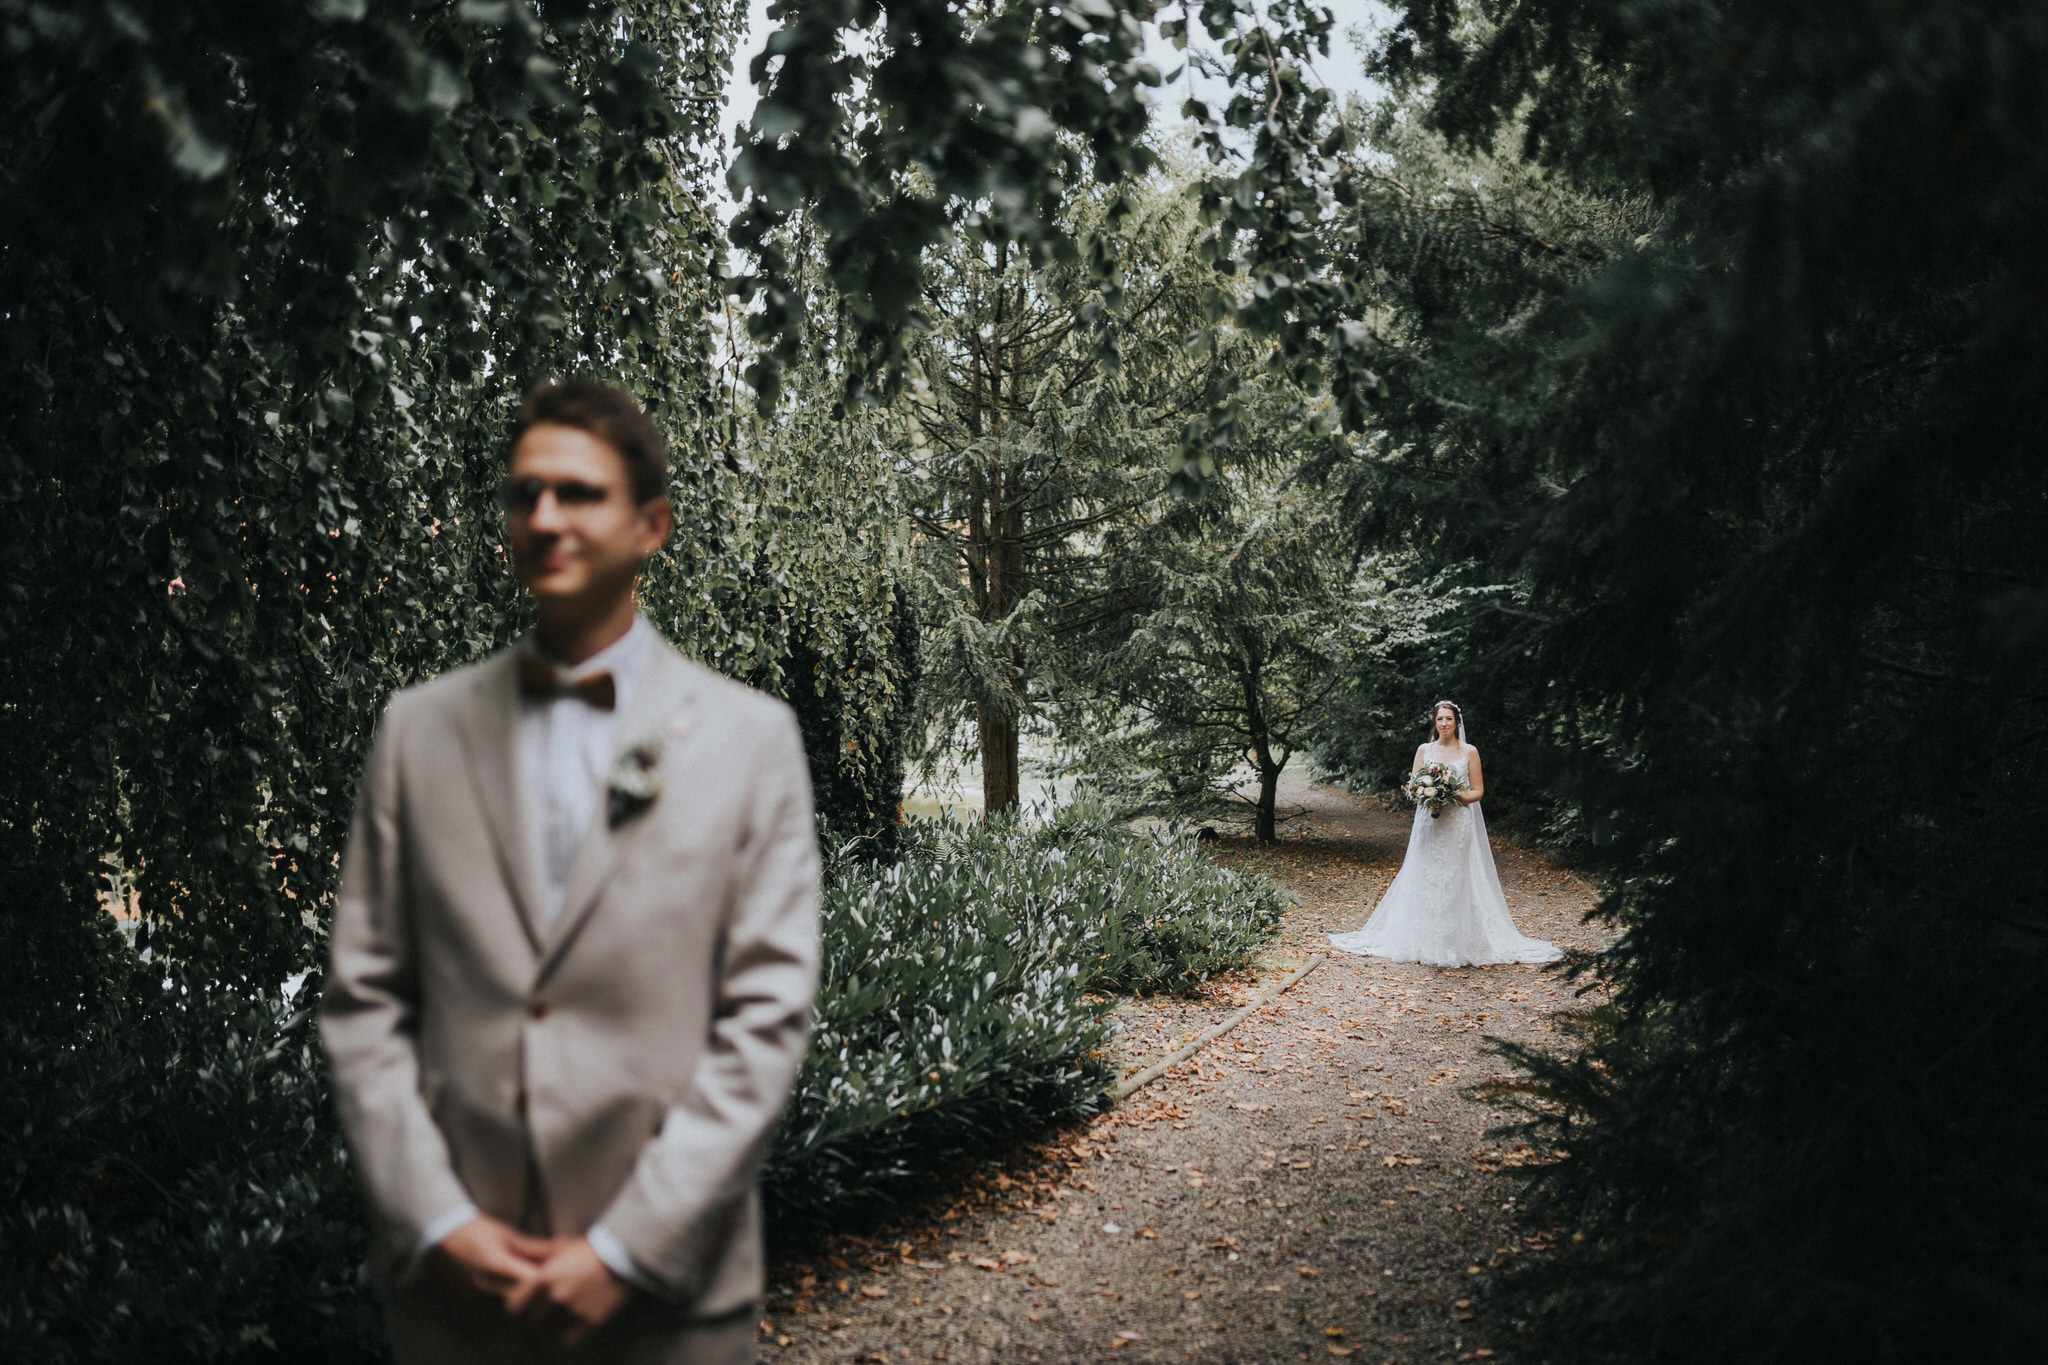 Emotionaler 'First Look' im Garten des Hotel Freigeist in Northeim – Ein magischer Moment, als Braut und Bräutigam sich das erste Mal sehen und die Vorfreude auf den großen Tag im grünen Ambiente spüren.